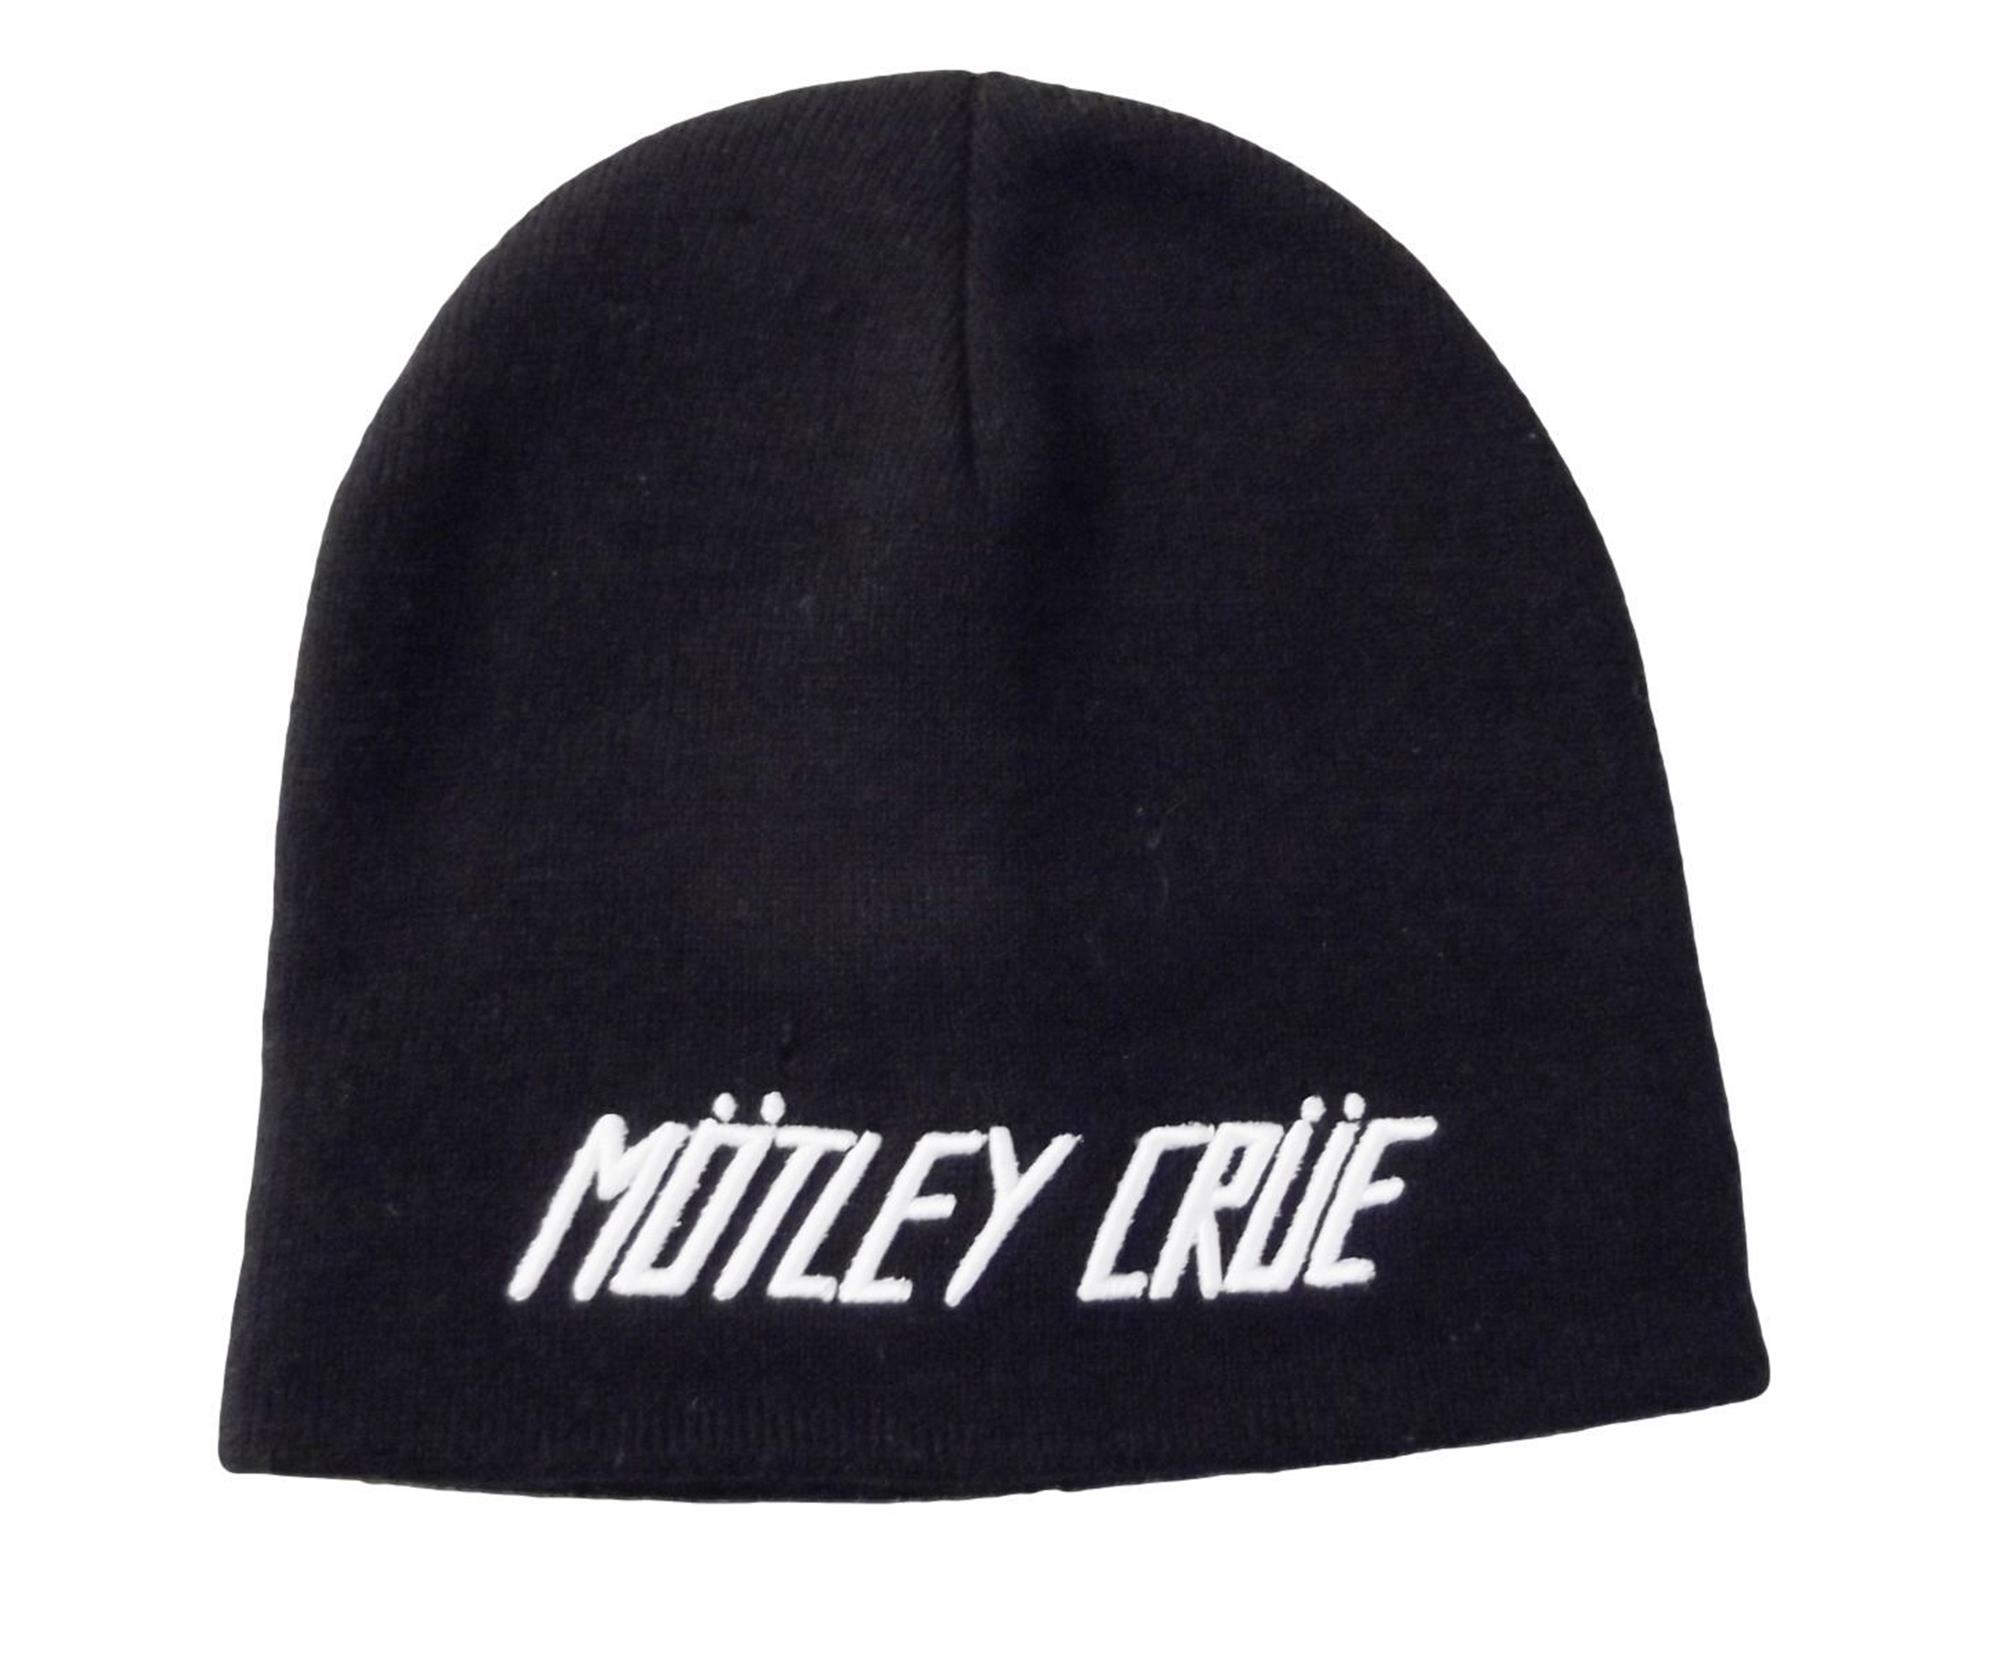 Motley Crue Logo Beanie Hat by Motley Crue